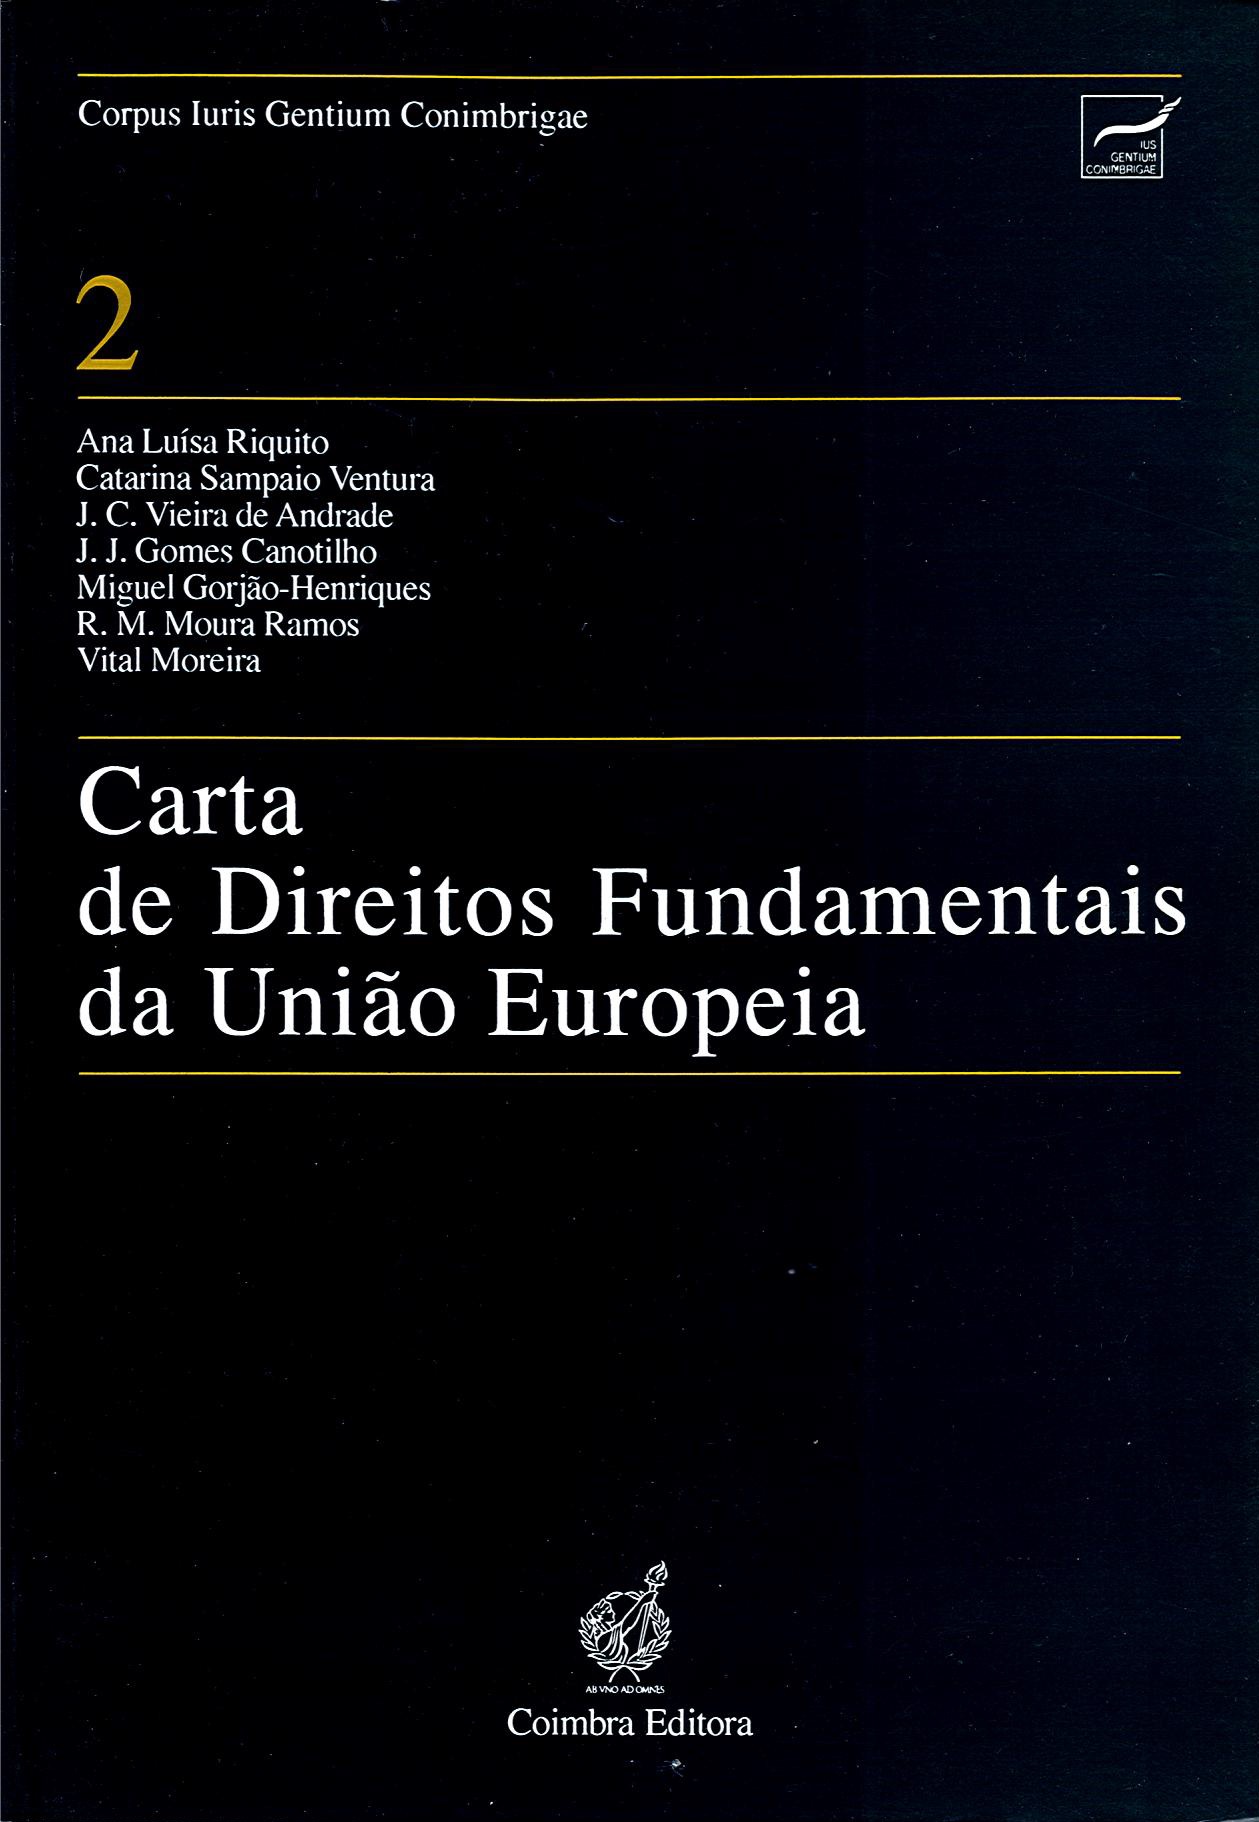 Carta de Direitos Fundamentais da União Europeia (2001)